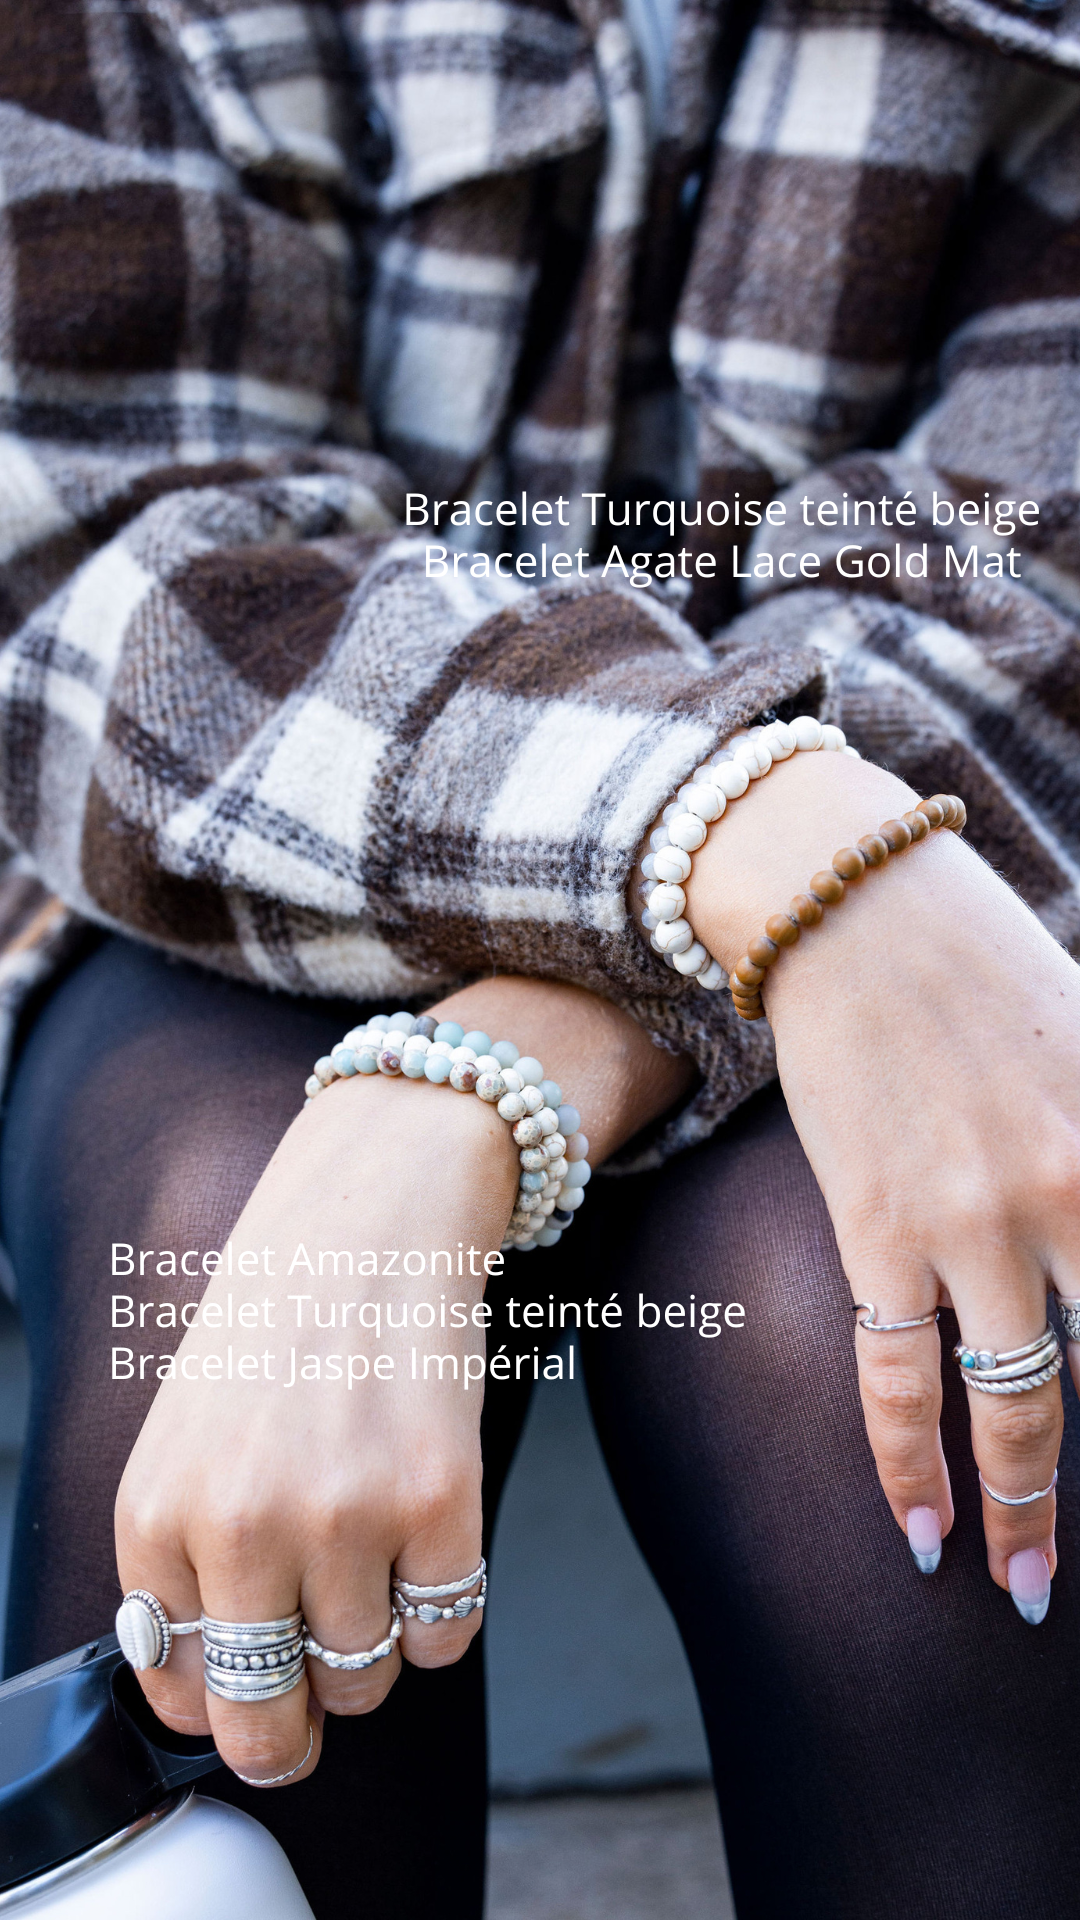 Bracelet Agate Lace Gold Mat